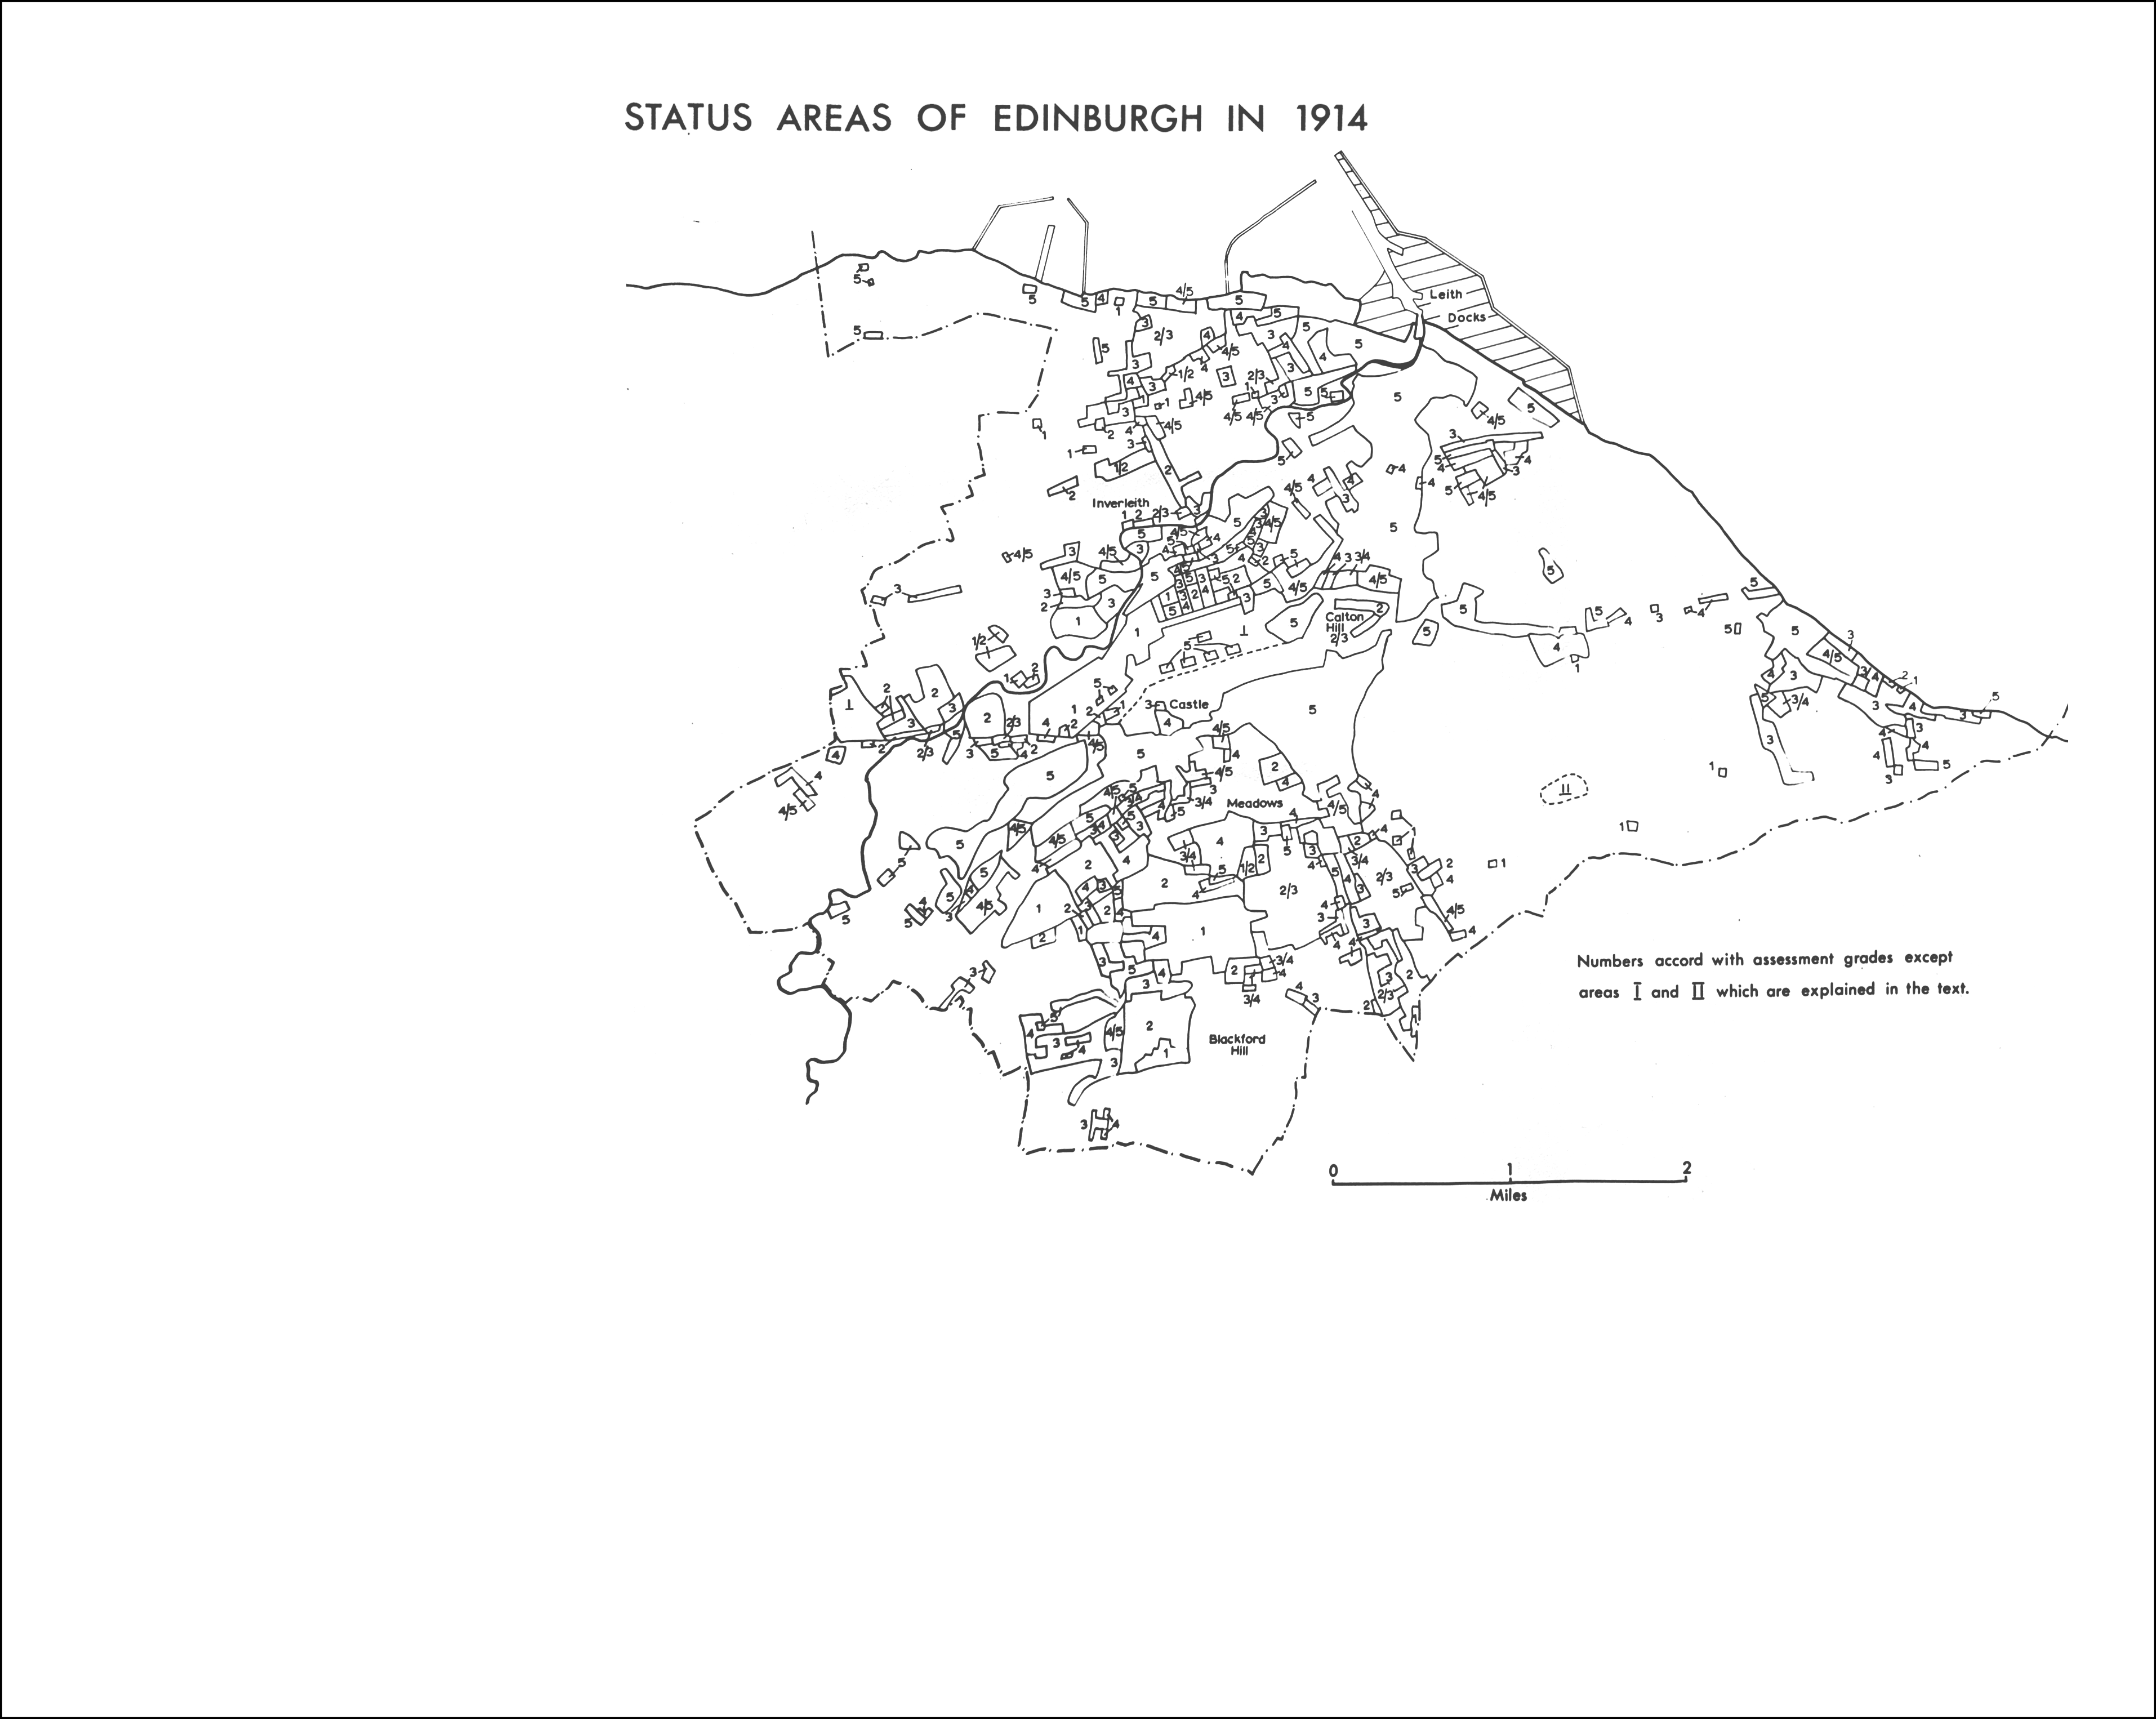 Status areas of Edinburgh in 1914